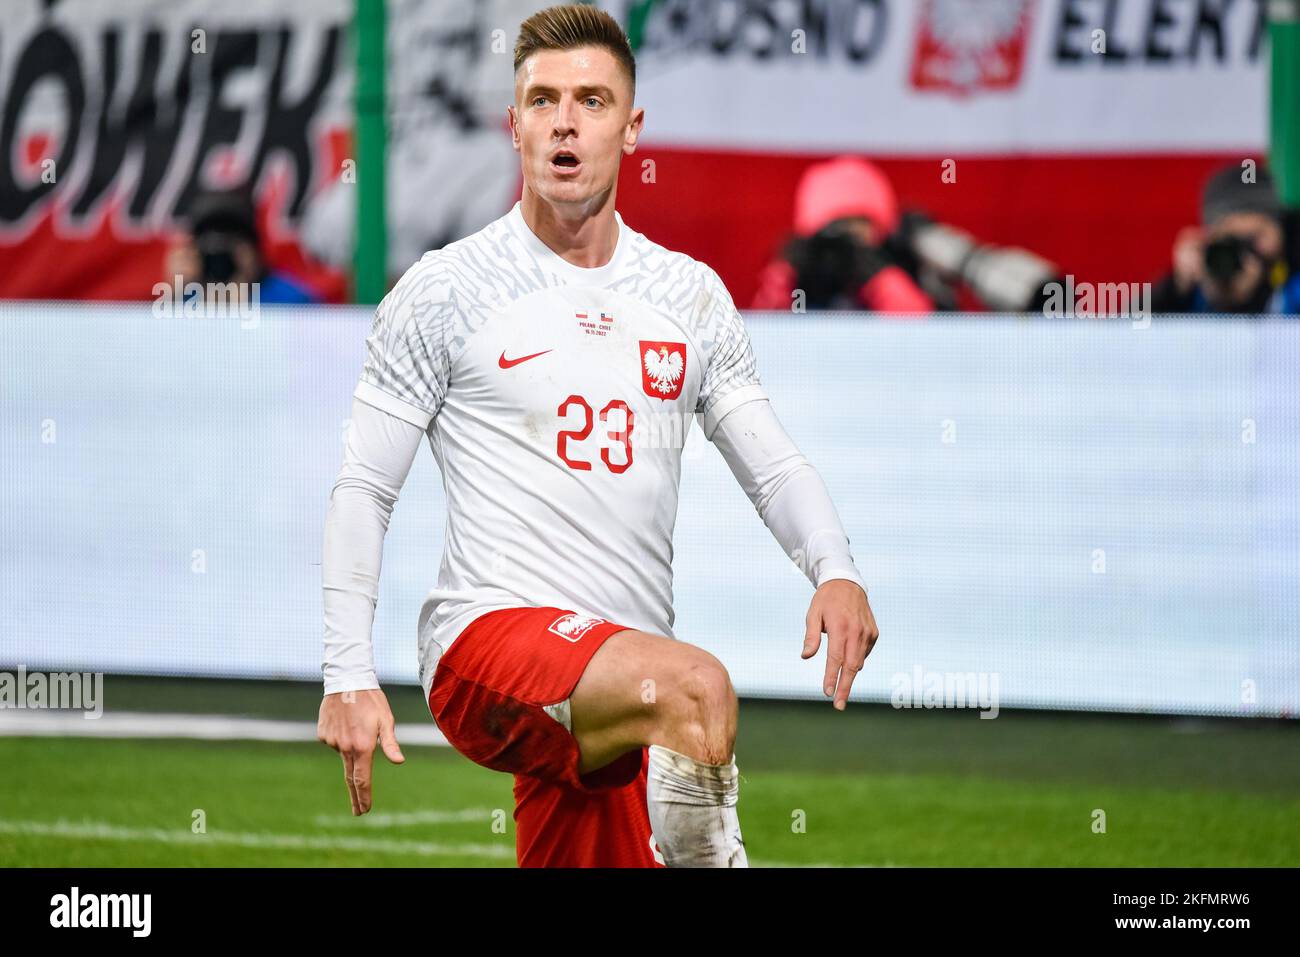 VARSOVIE, POLOGNE - 16 NOVEMBRE 2022: Match de football amical Pologne contre Chili 1:0. Krzysztof Piatek joie après avoir marquant le but. Banque D'Images